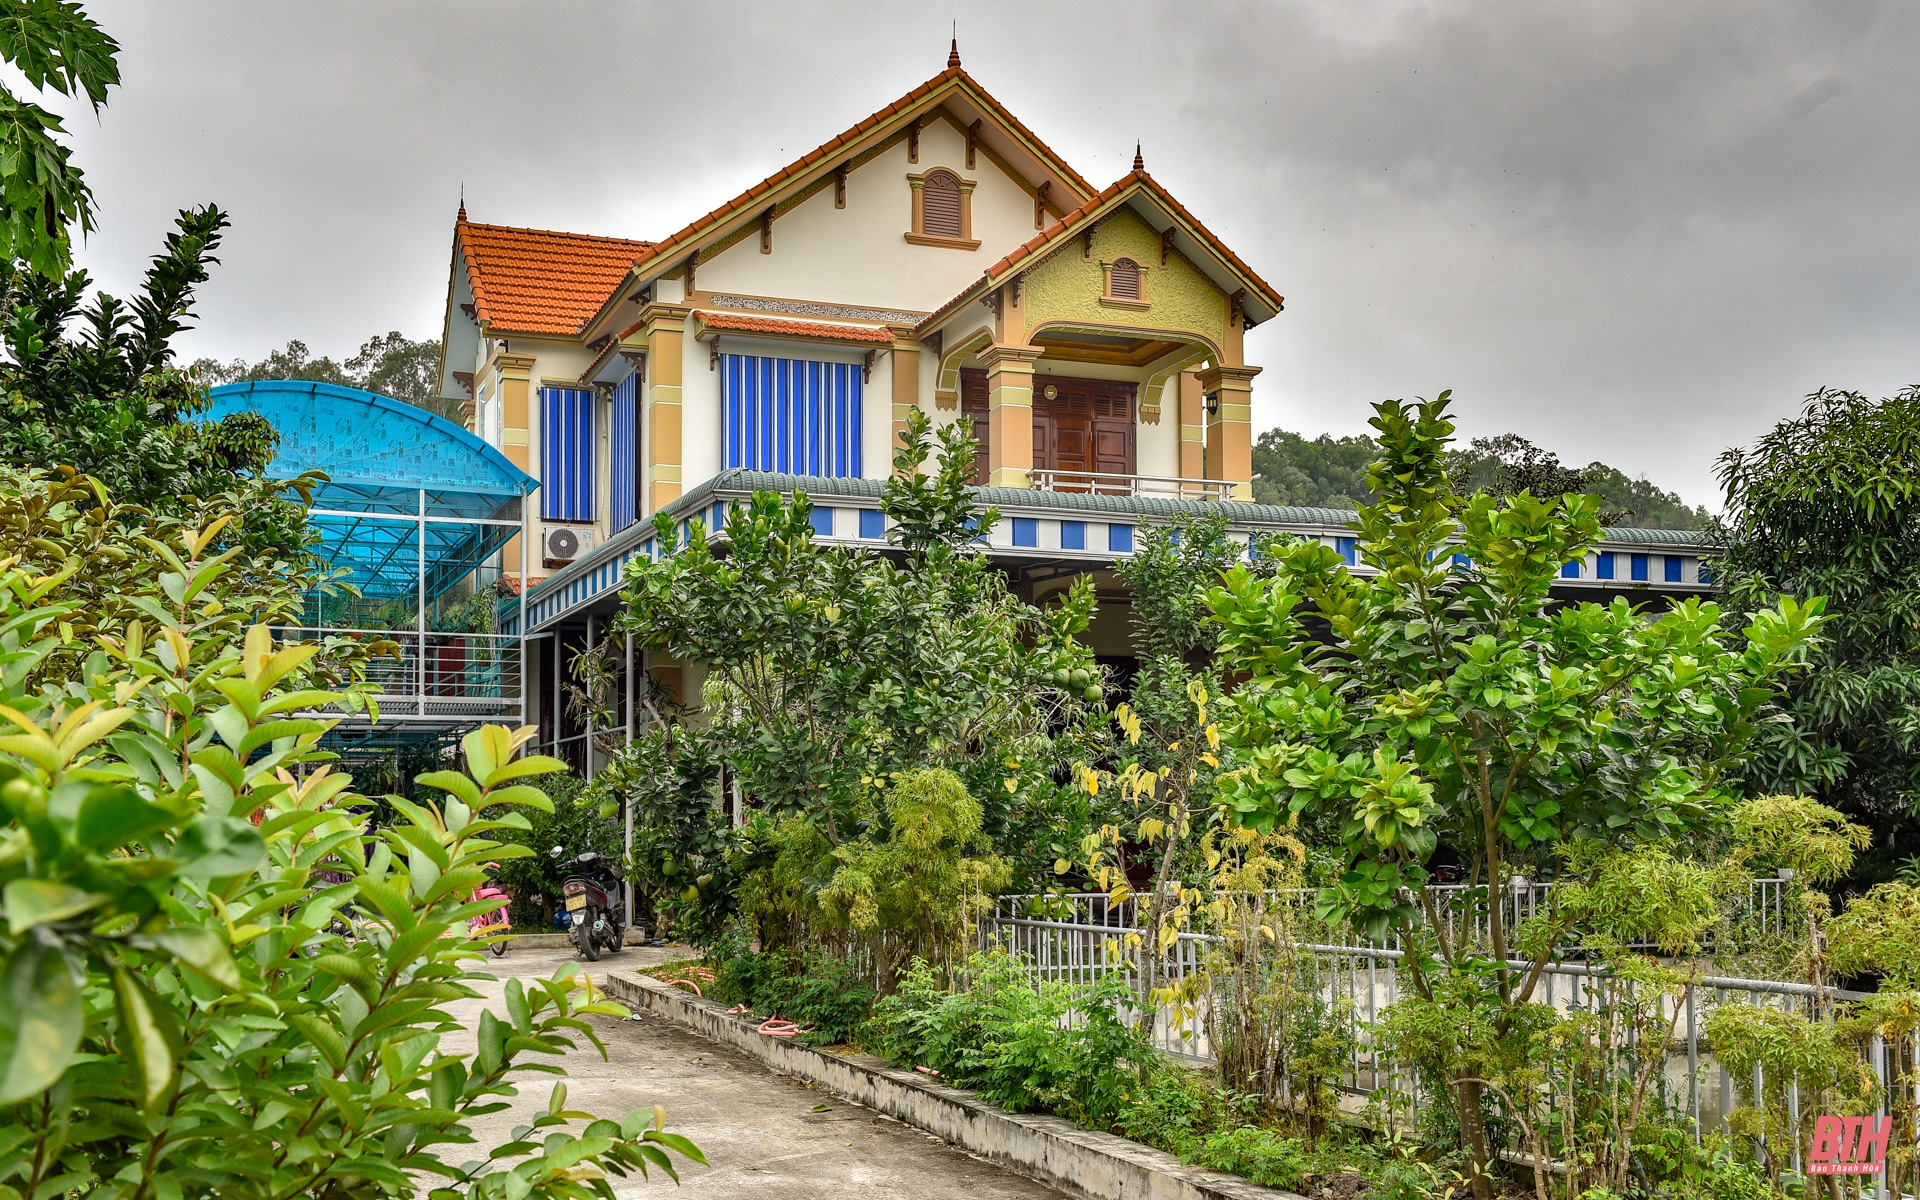 Ngôi nhà 2 tầng với thiết kế mái Thái vừa nổi bật, vừa dễ tạo thiện cảm cho người đến chơi.